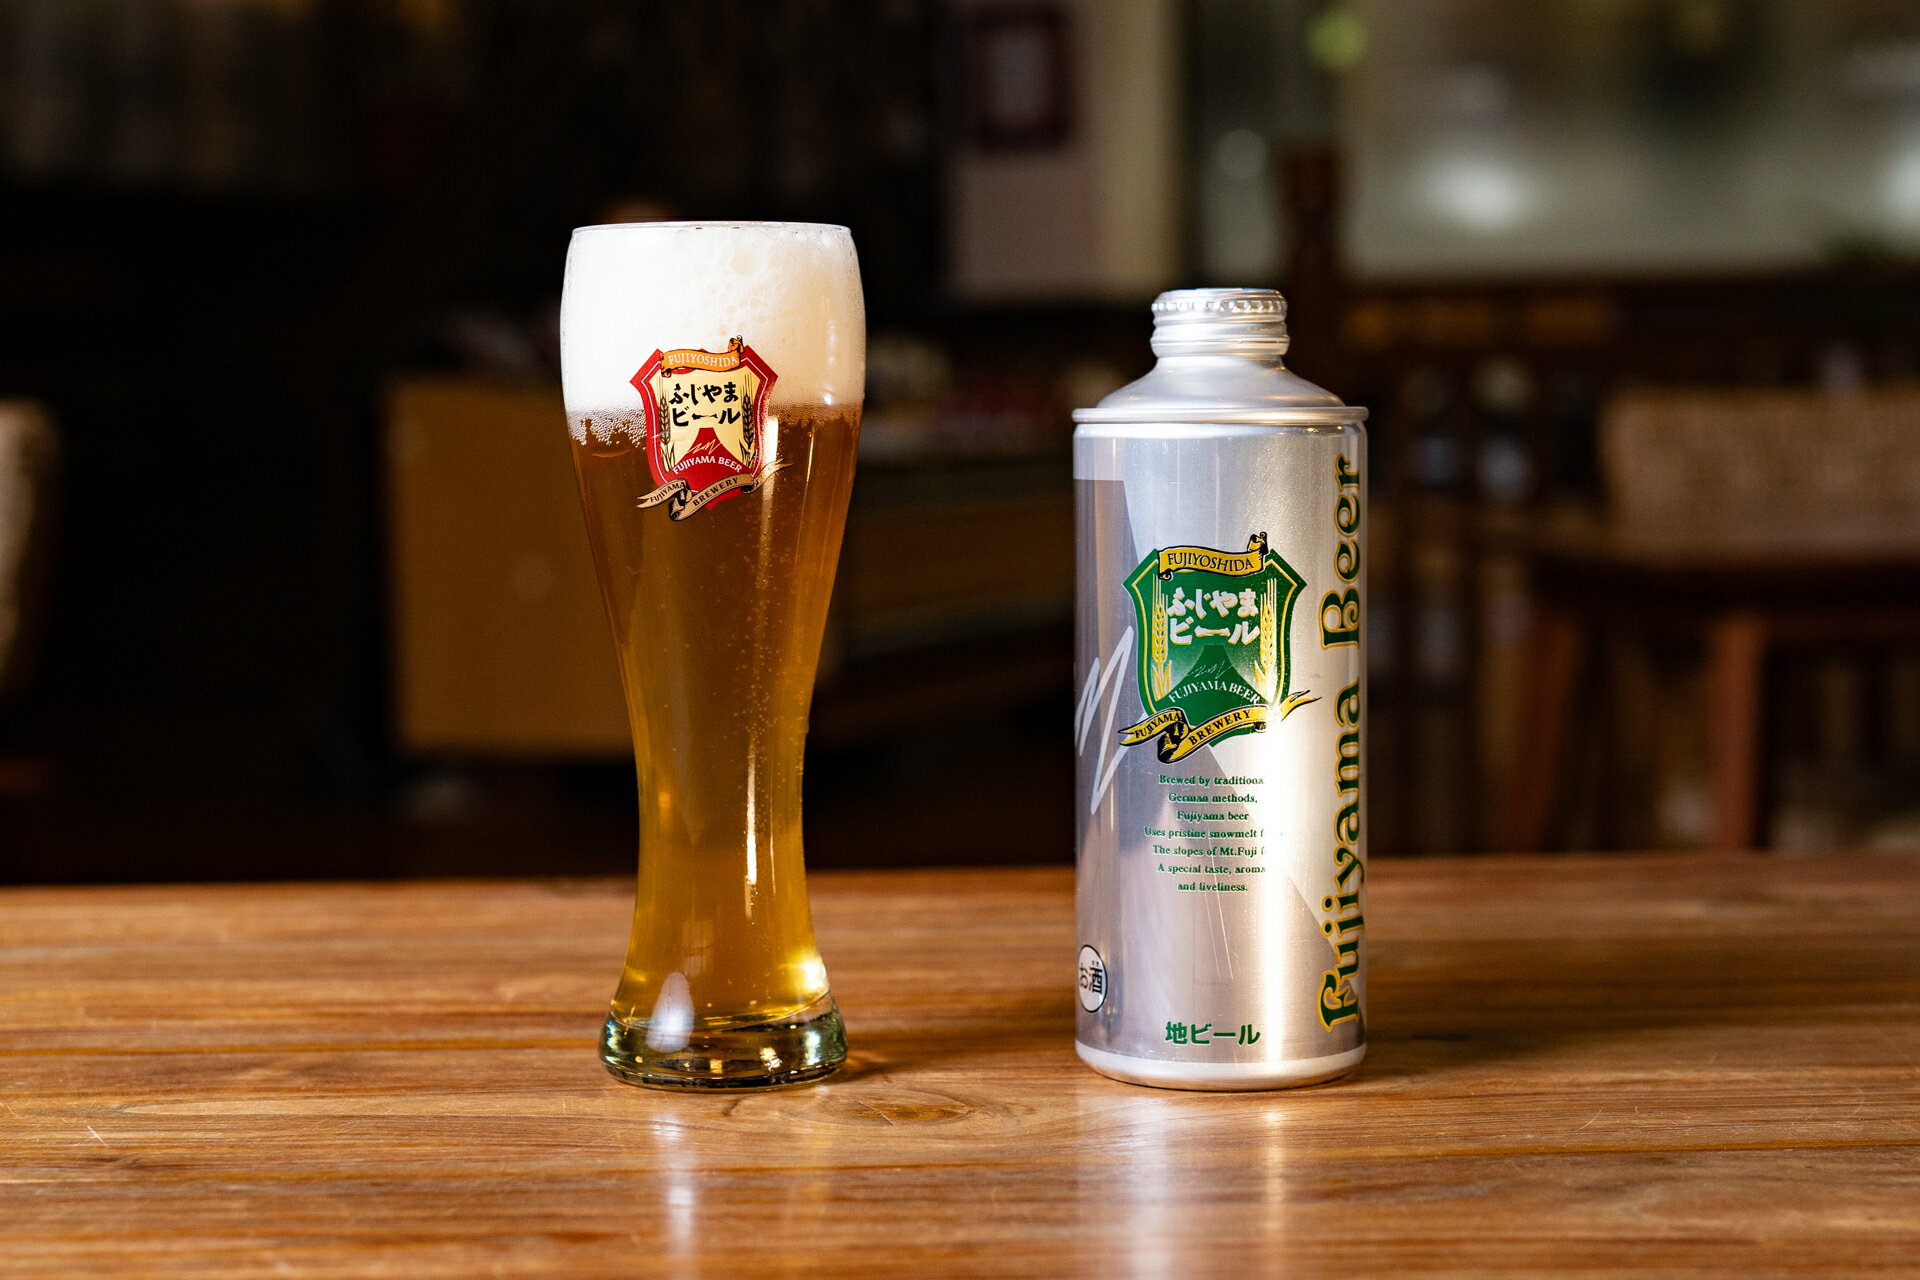 ふじやまビール お試しビール 1リットル缶 1本 贈答品 天然水 ビール プレゼント 富士山 山梨 富士吉田